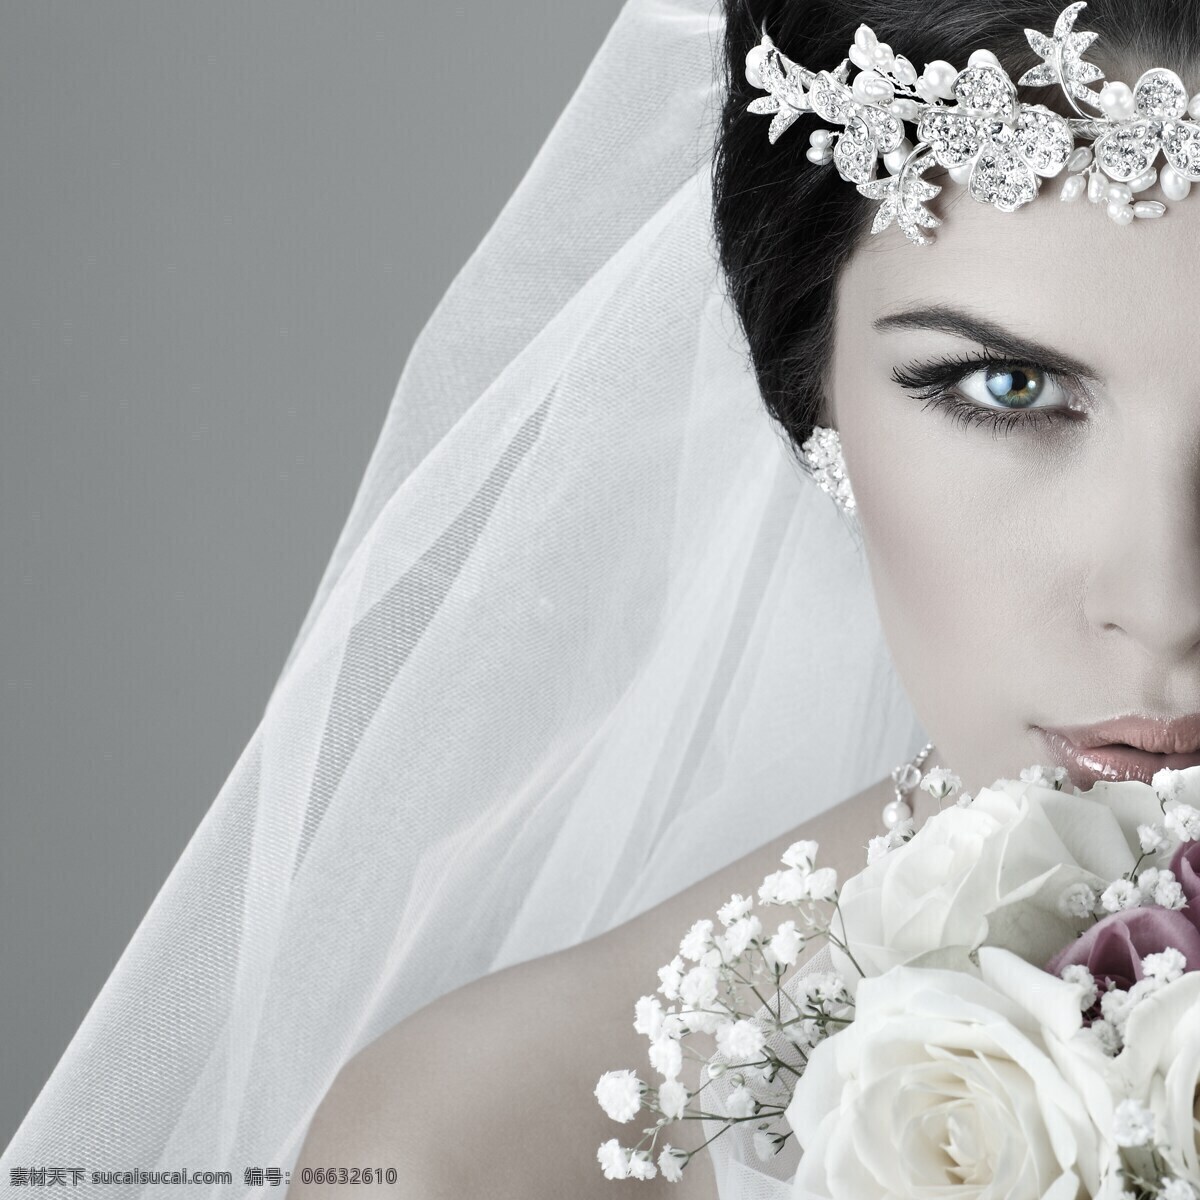 美丽 新娘 鲜花 女人 外国女人 婚纱 花朵 情侣图片 人物图片